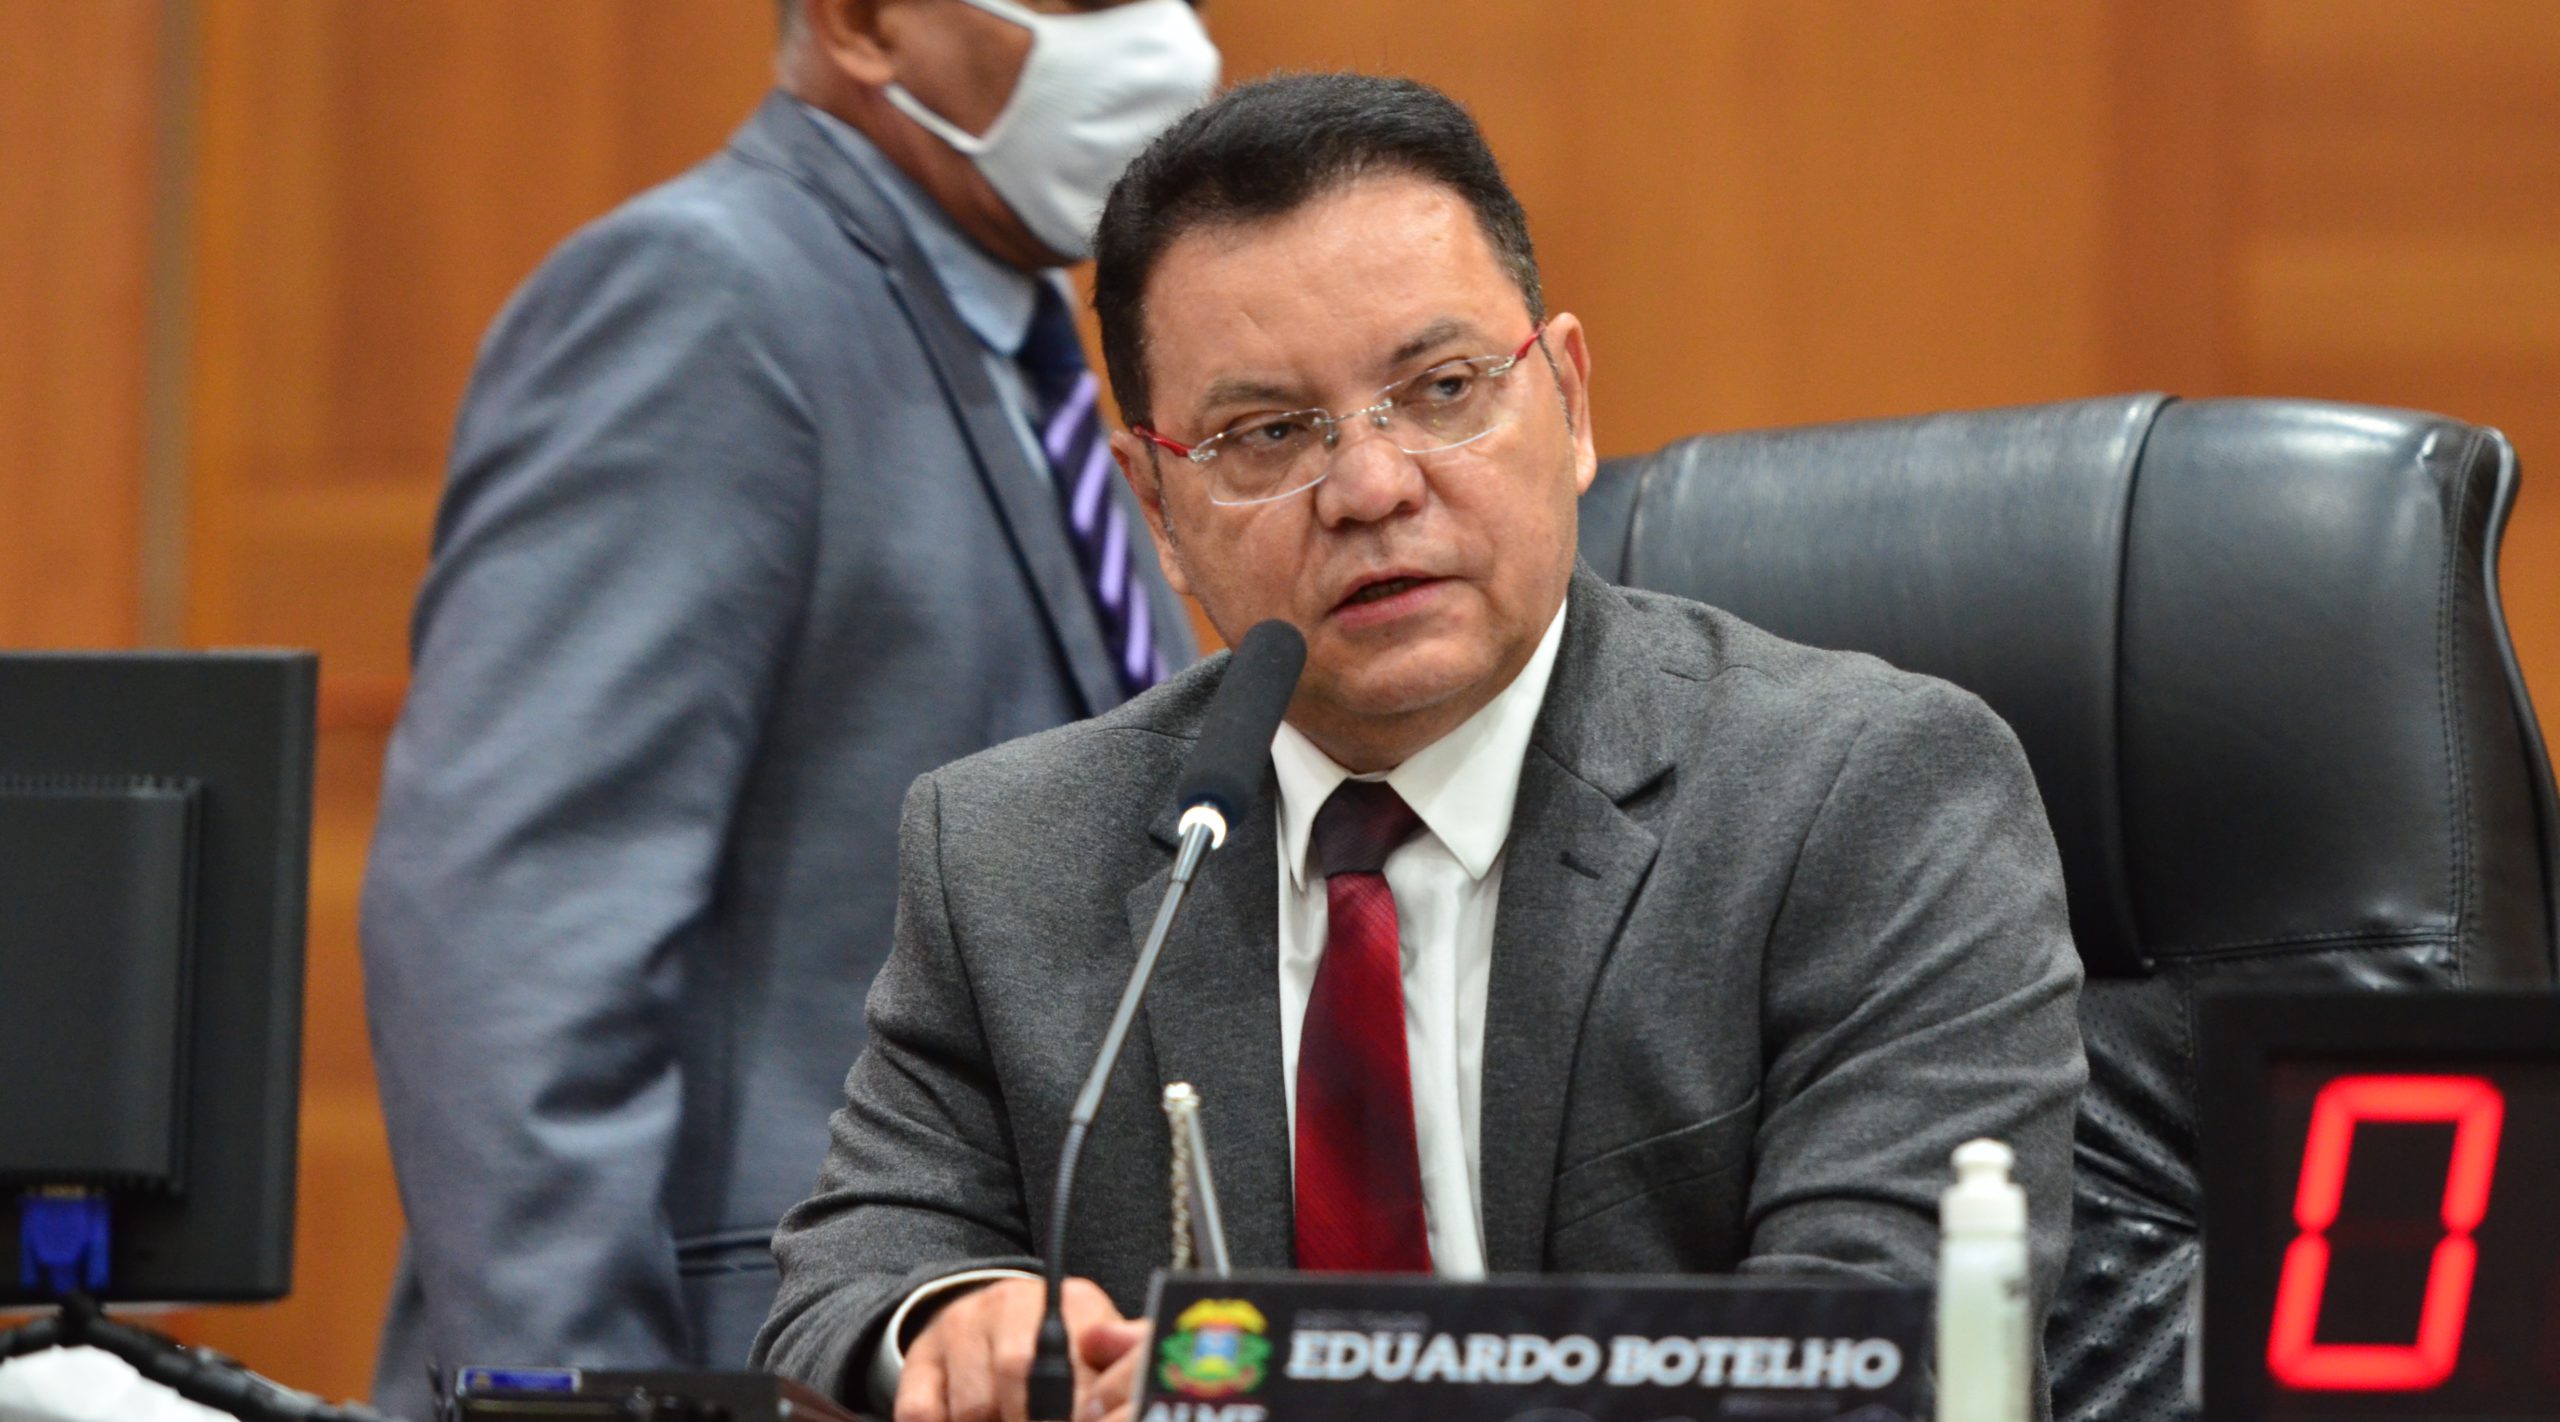 Imagem: Eduardo Botelho scaled Botelho diz não ser razoável investir R$ 16 milhões em plebiscito